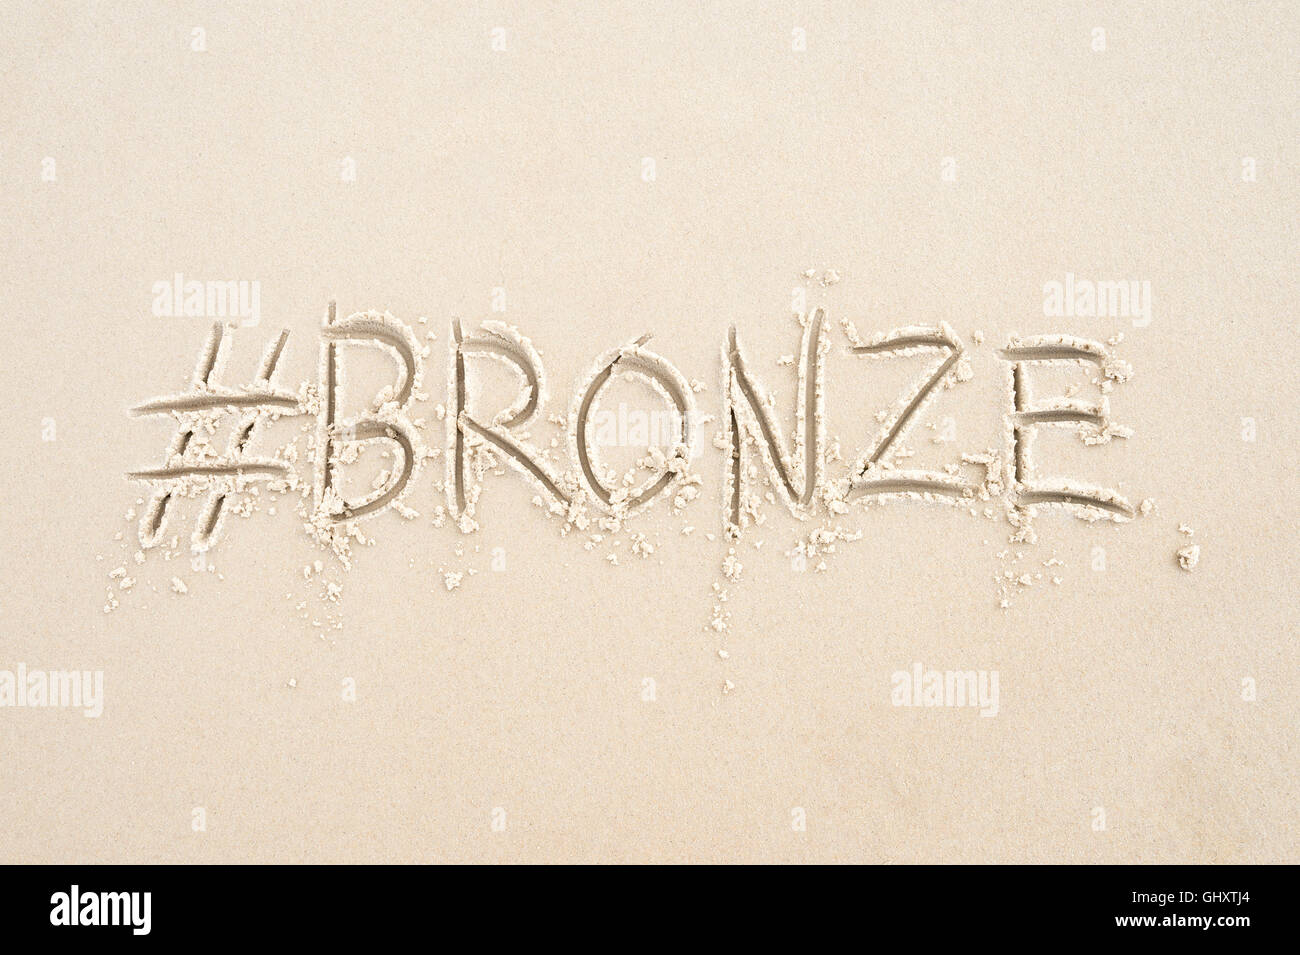 Hashtag-social Media-Nachricht für die Bronze-Medaille, des Sports dritten Platz, geschrieben im Sand am Strand von Rio De Janeiro, Brasilien Stockfoto